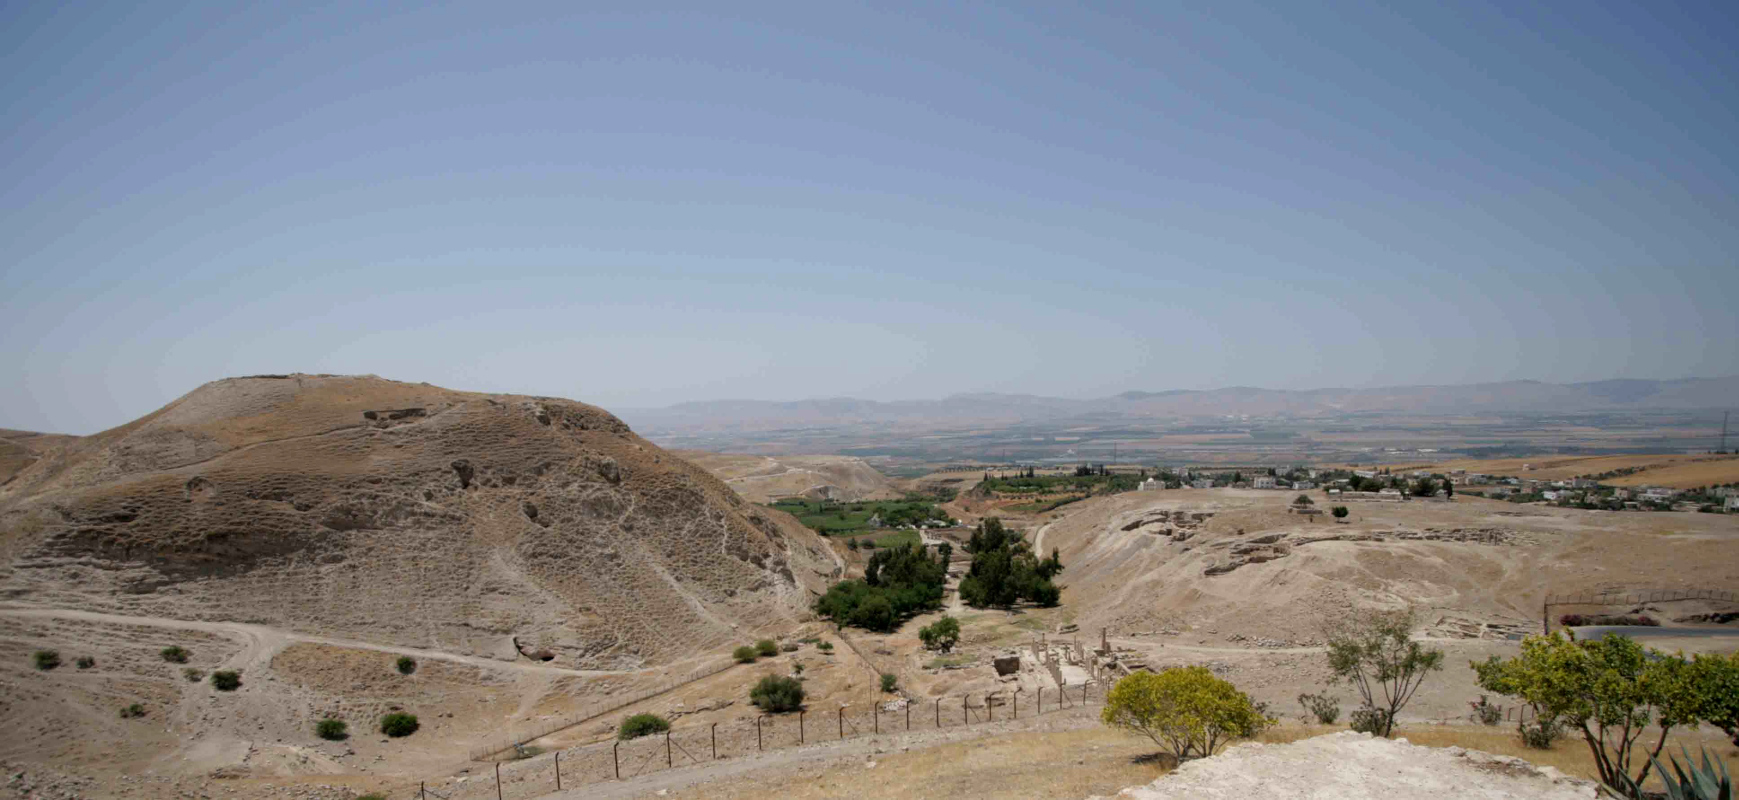 Pella. Vista del sito archeologico: sulla sinistra Tell el-Husn, al centro gli alberi attorno alla sorgente del Wadi Jirm e a sinistra Tabaqat Fahl.